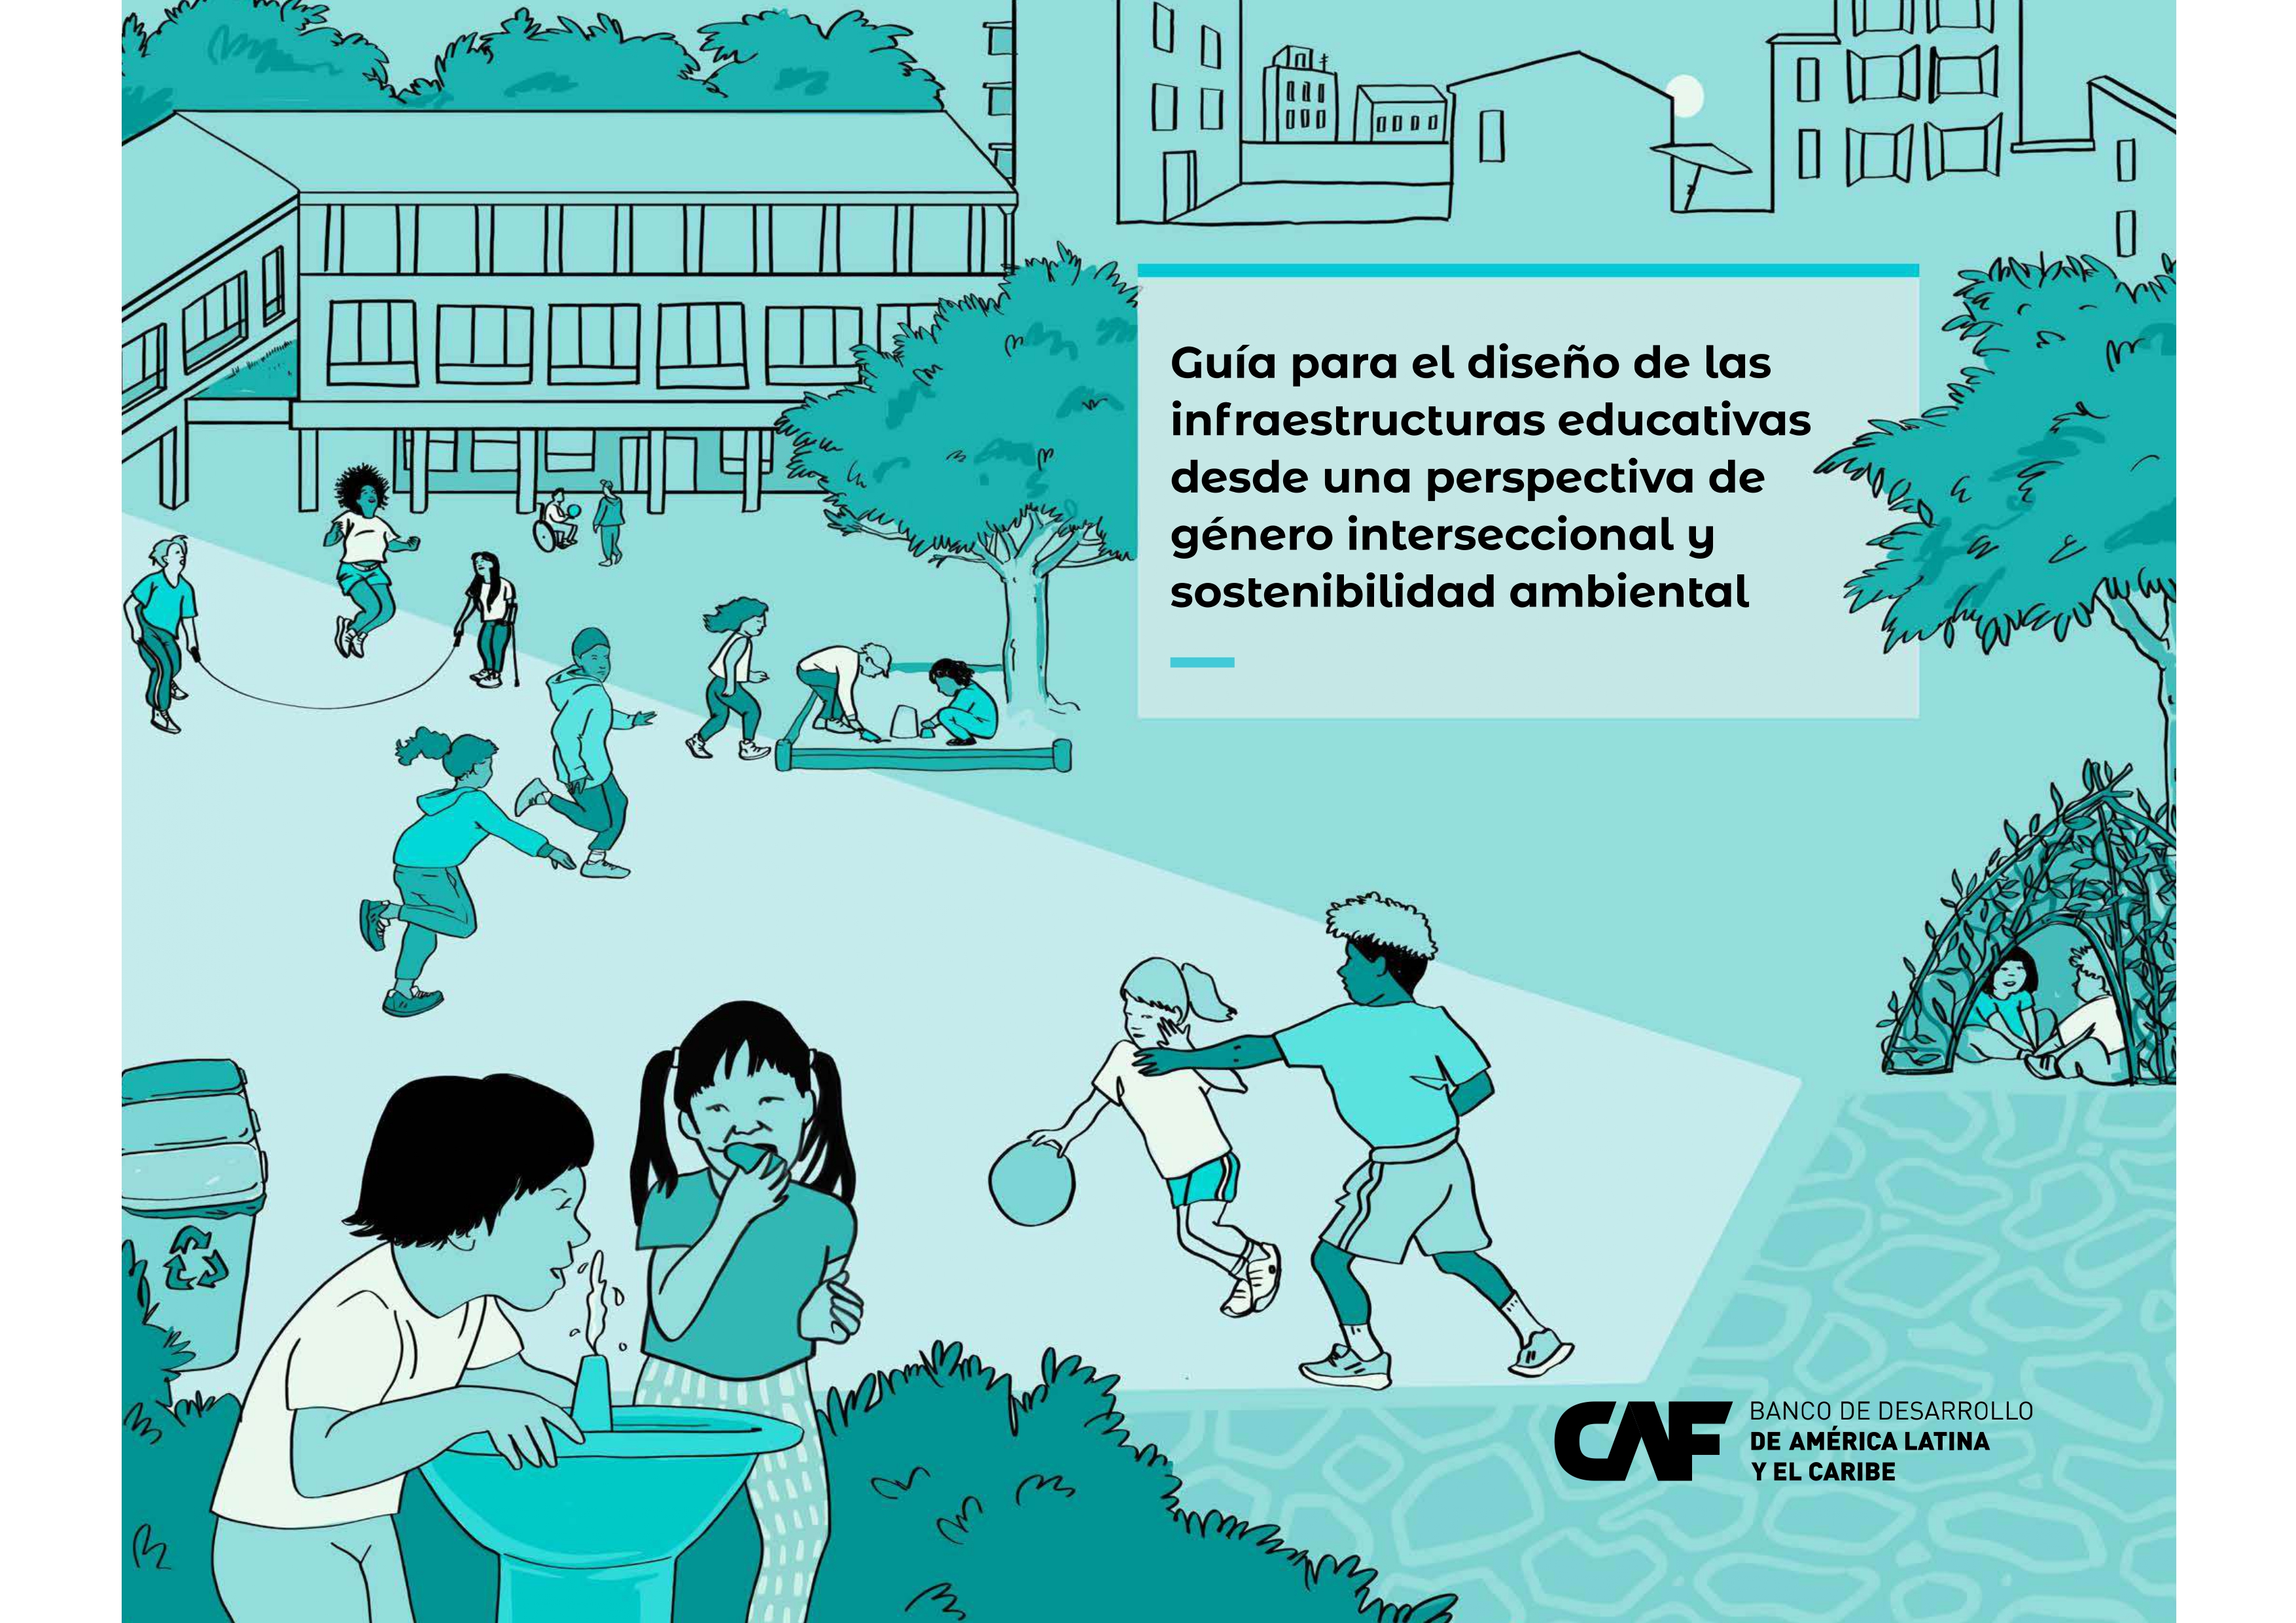 Guía para el diseño de las infraestructuras educativas desde una perspectiva de género interseccional y sostenibilidad ambiental